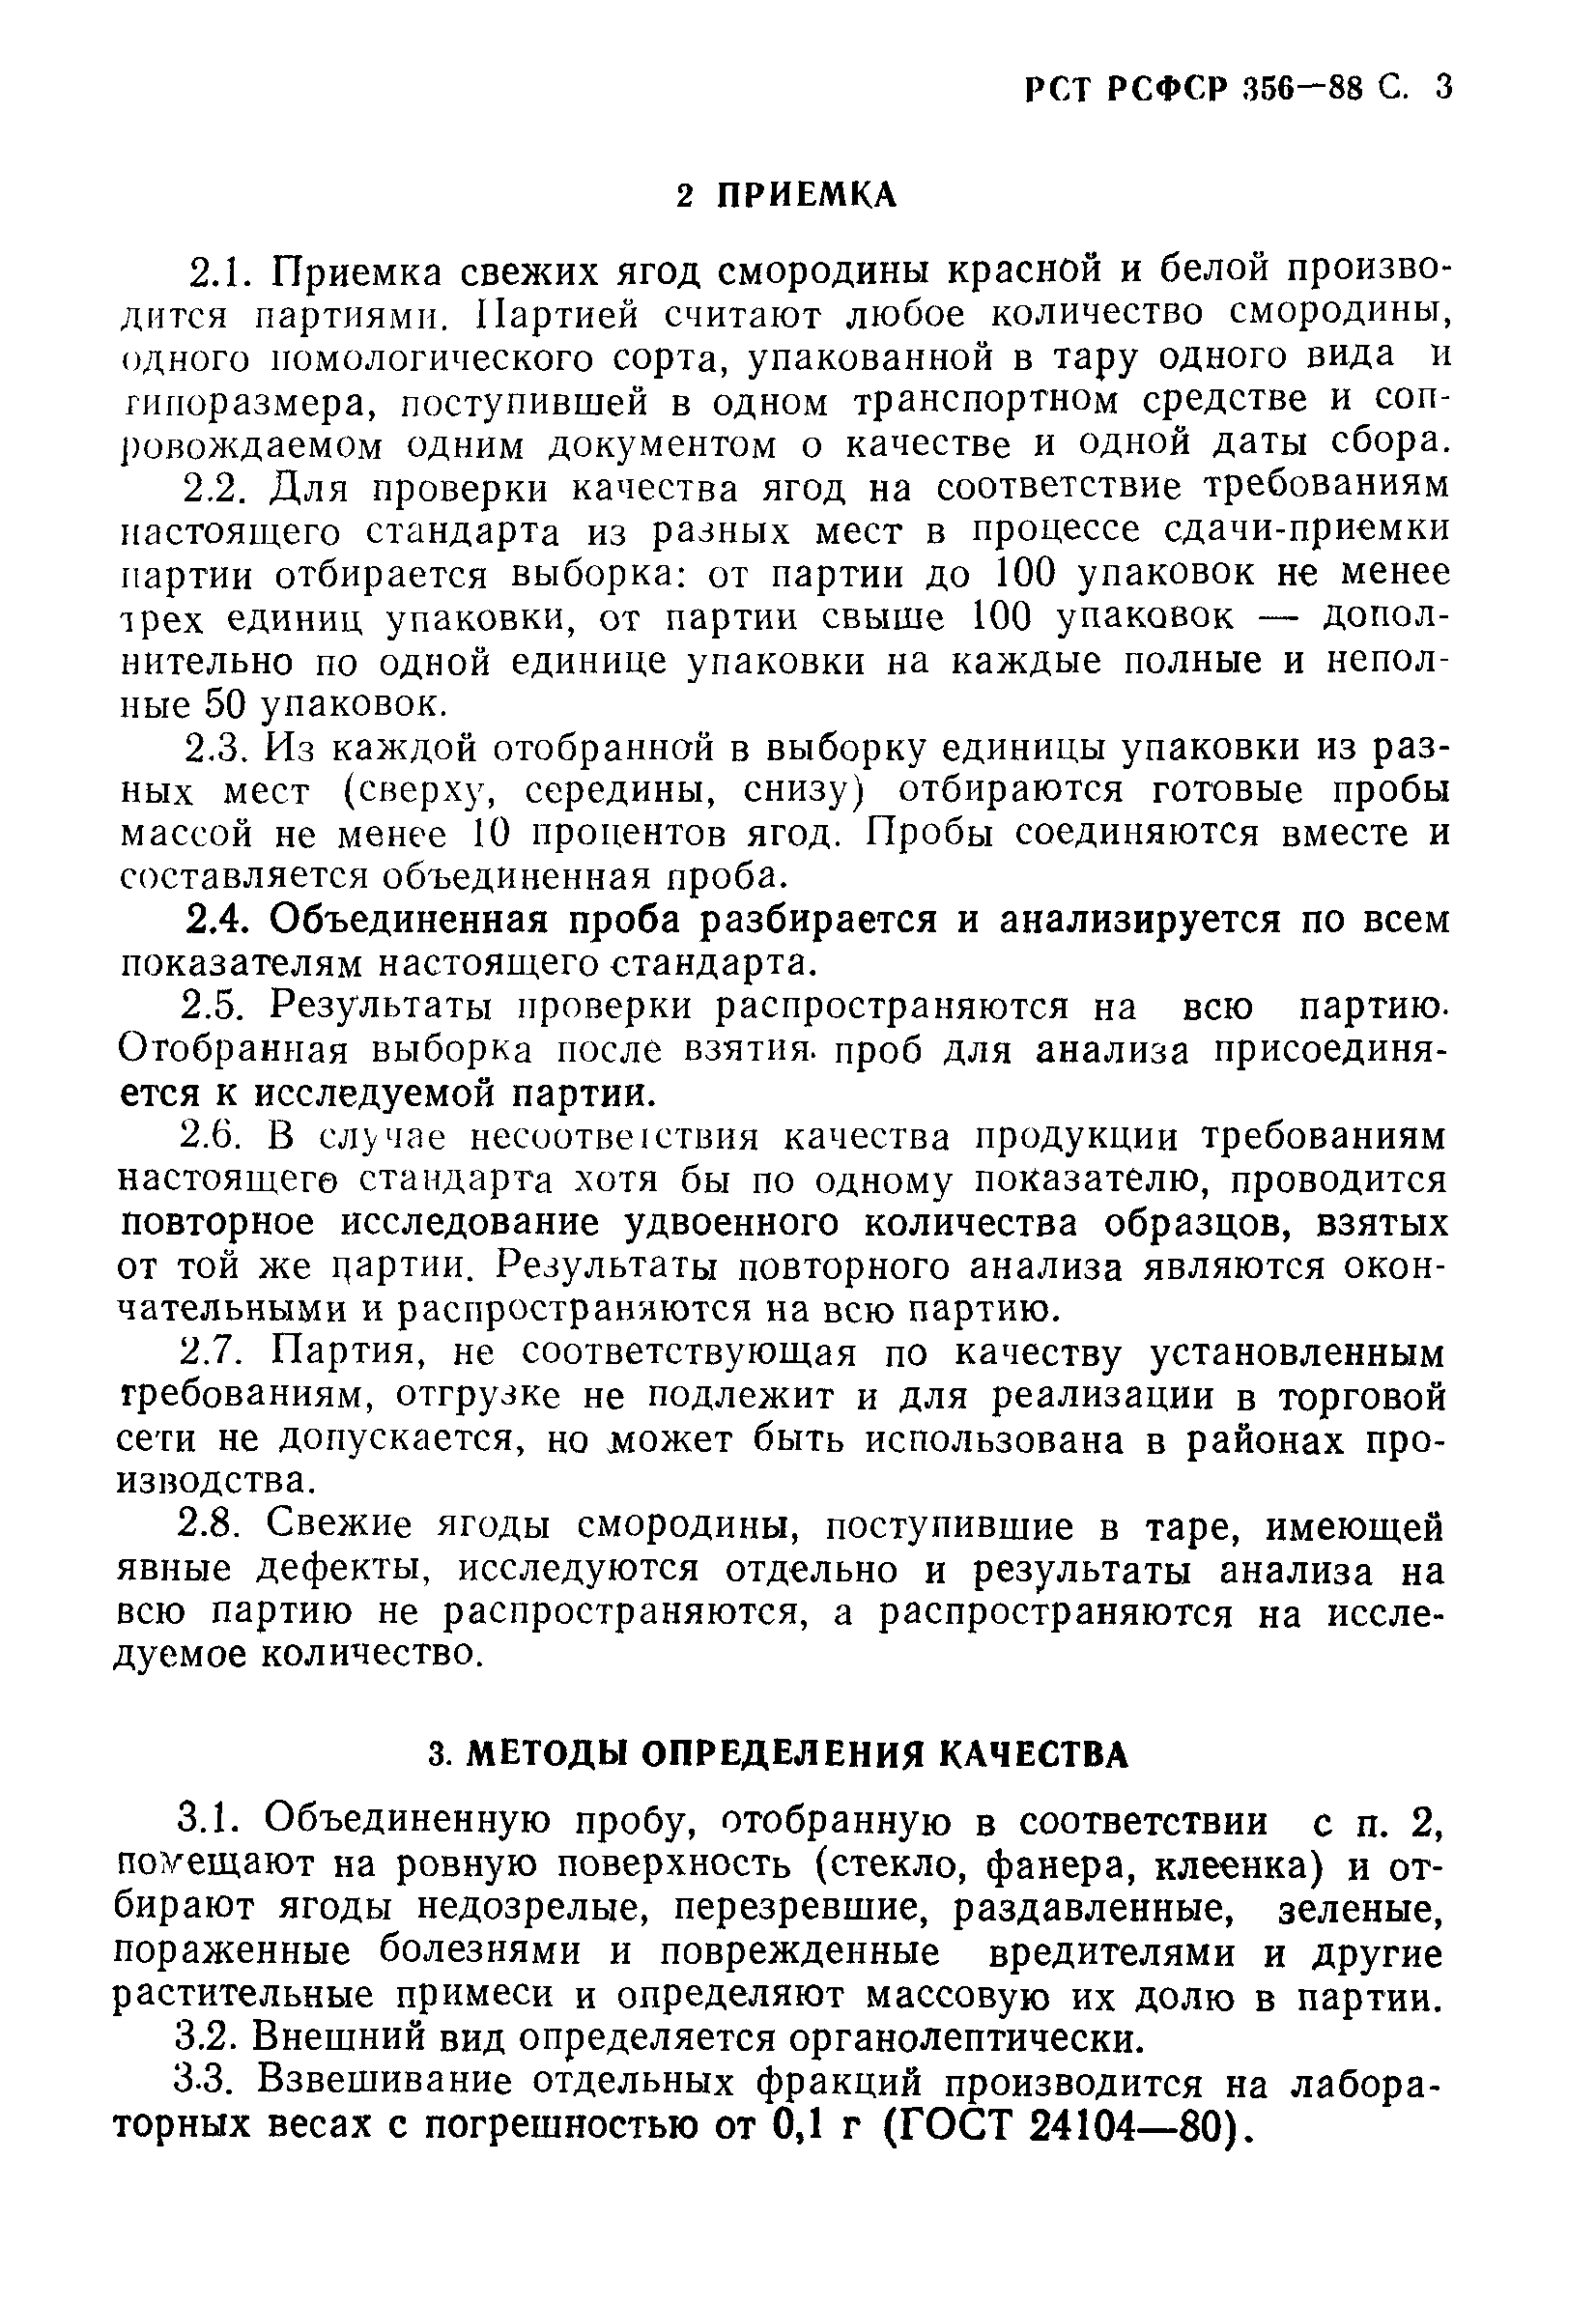 РСТ РСФСР 356-88